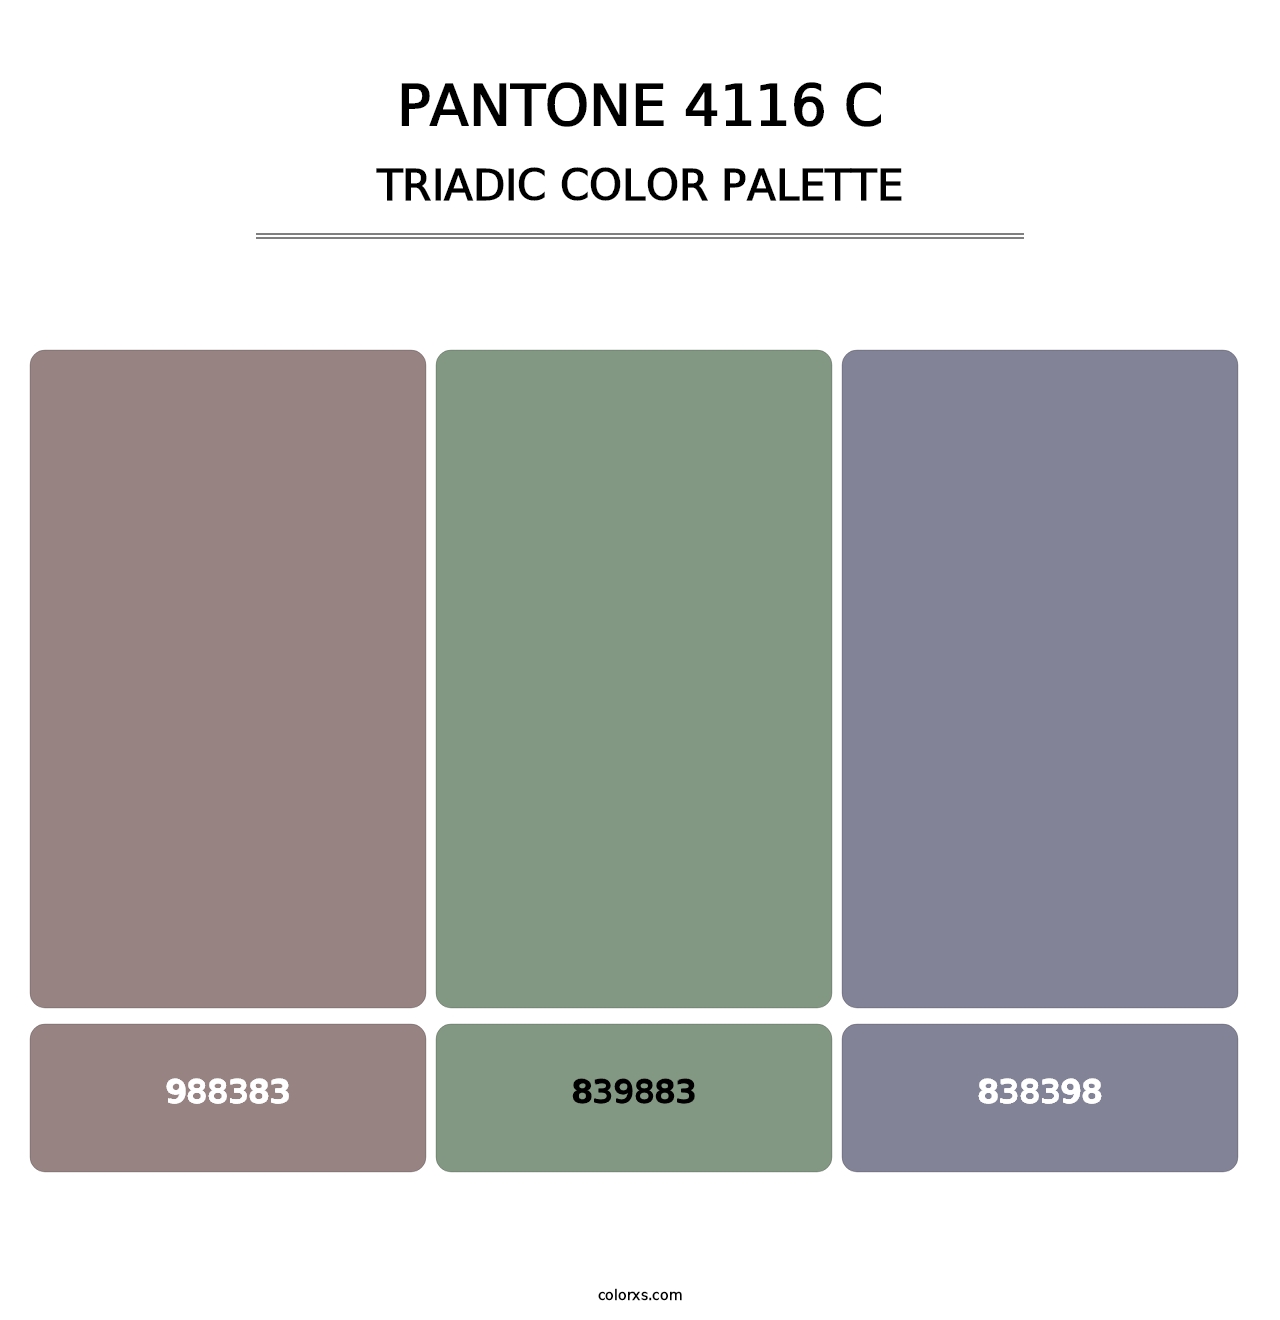 PANTONE 4116 C - Triadic Color Palette